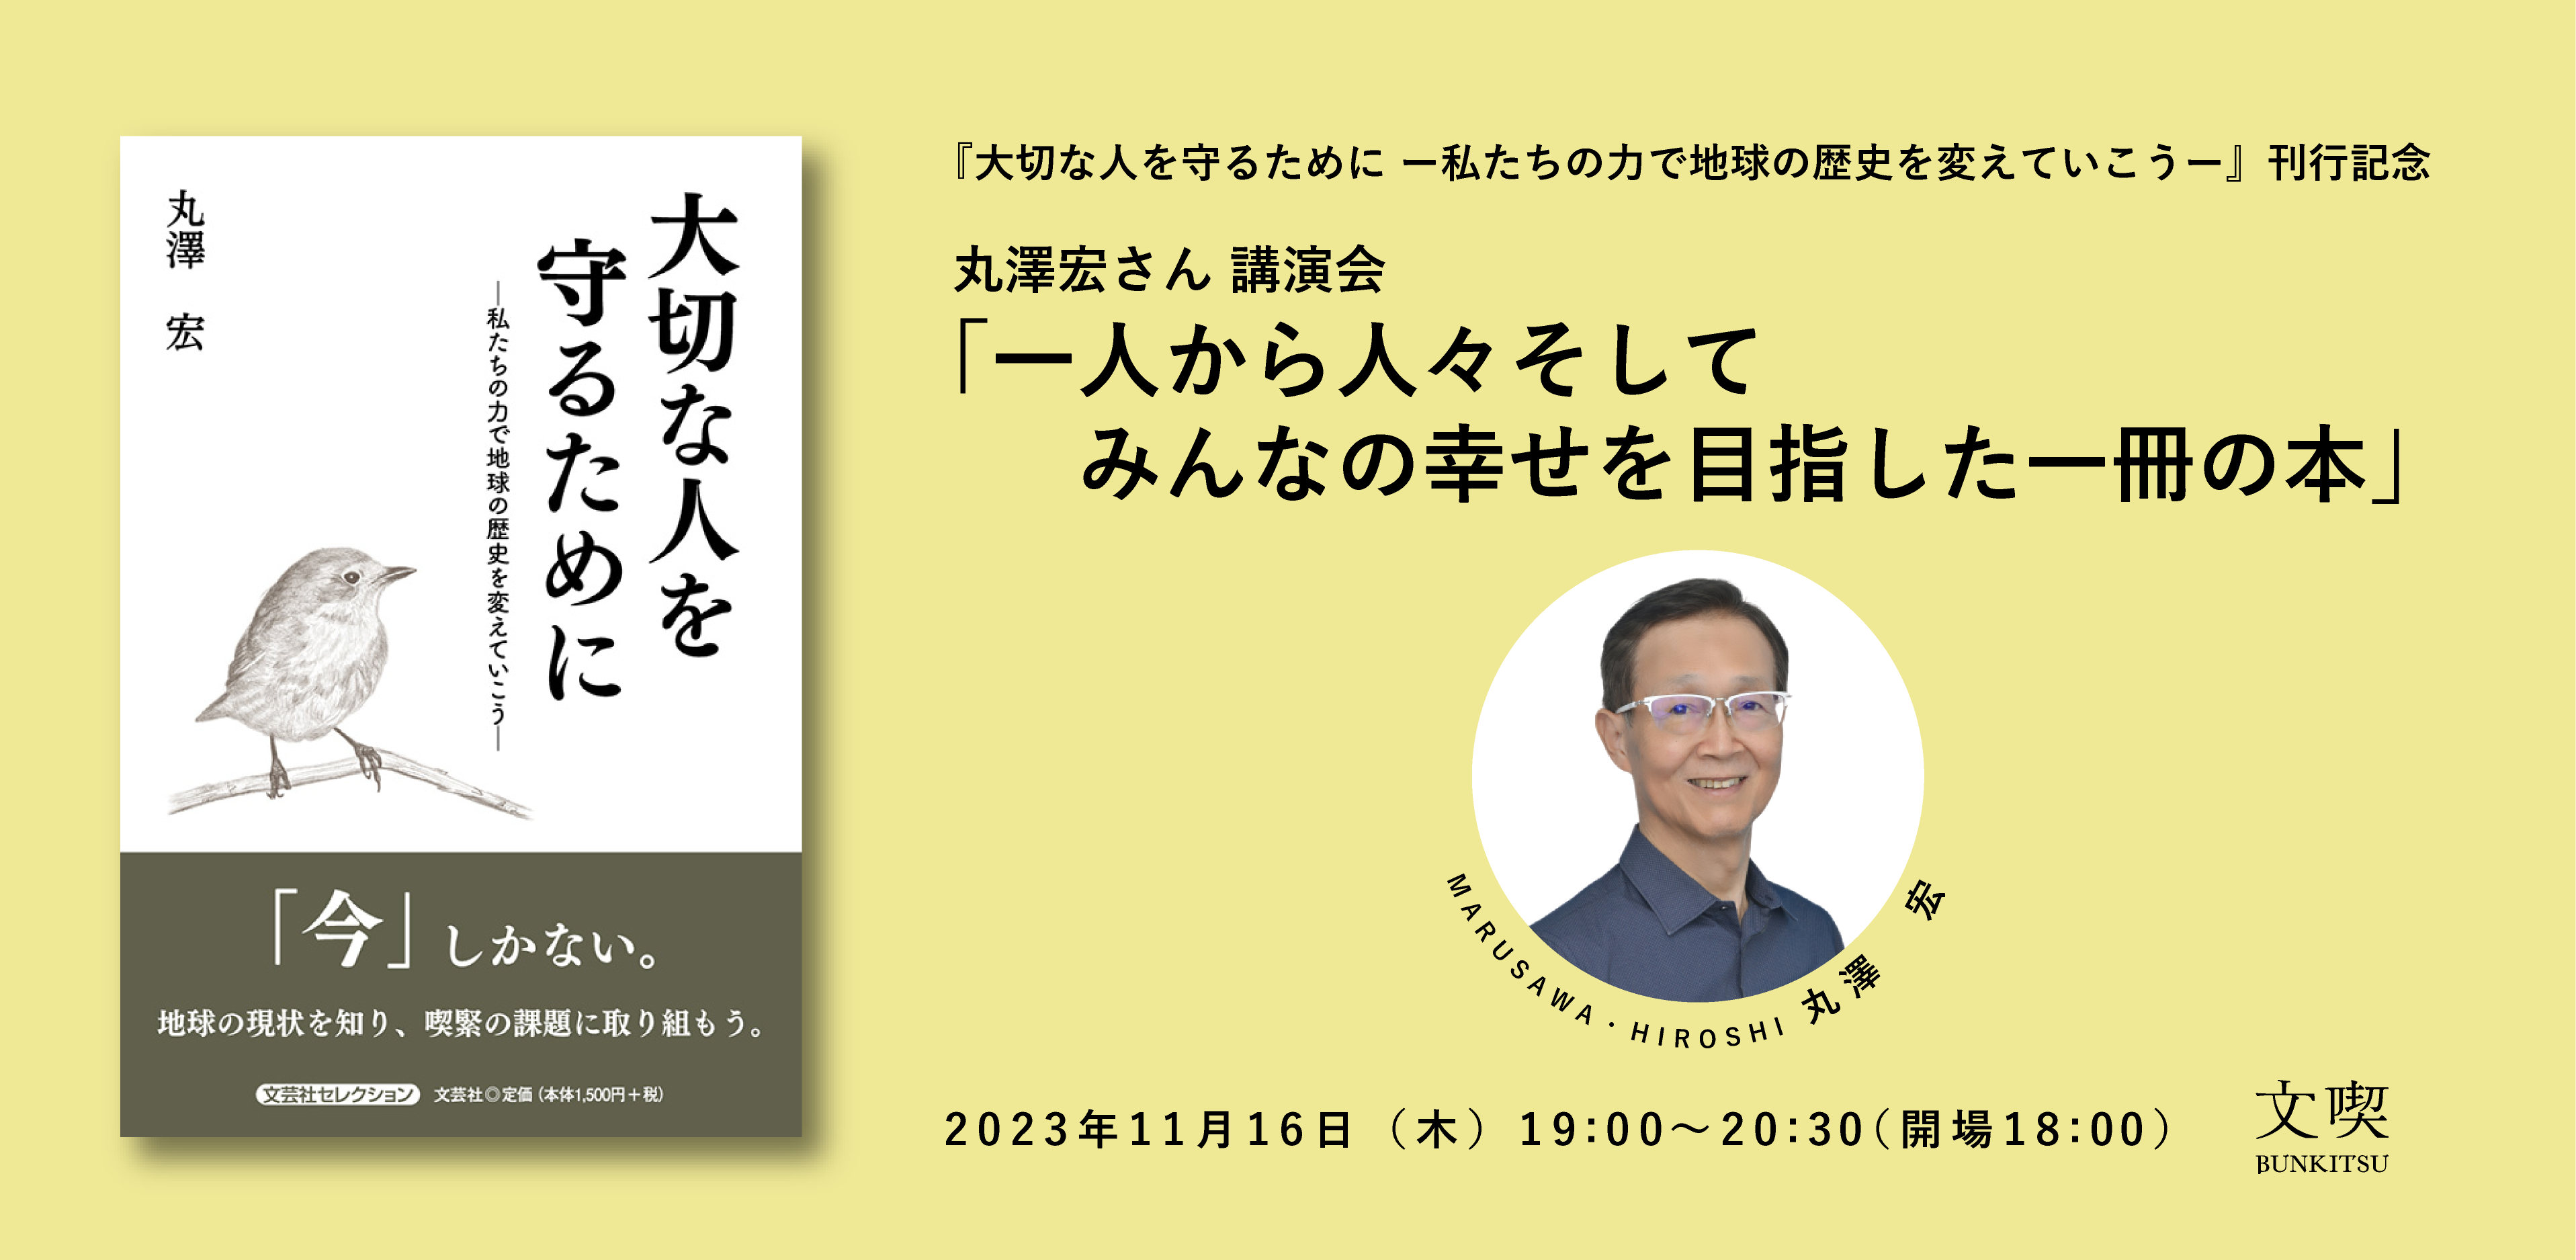 【11月16日】丸澤宏さん 講演会「一人から人々 そしてみんなの幸せを目指した一冊の本」